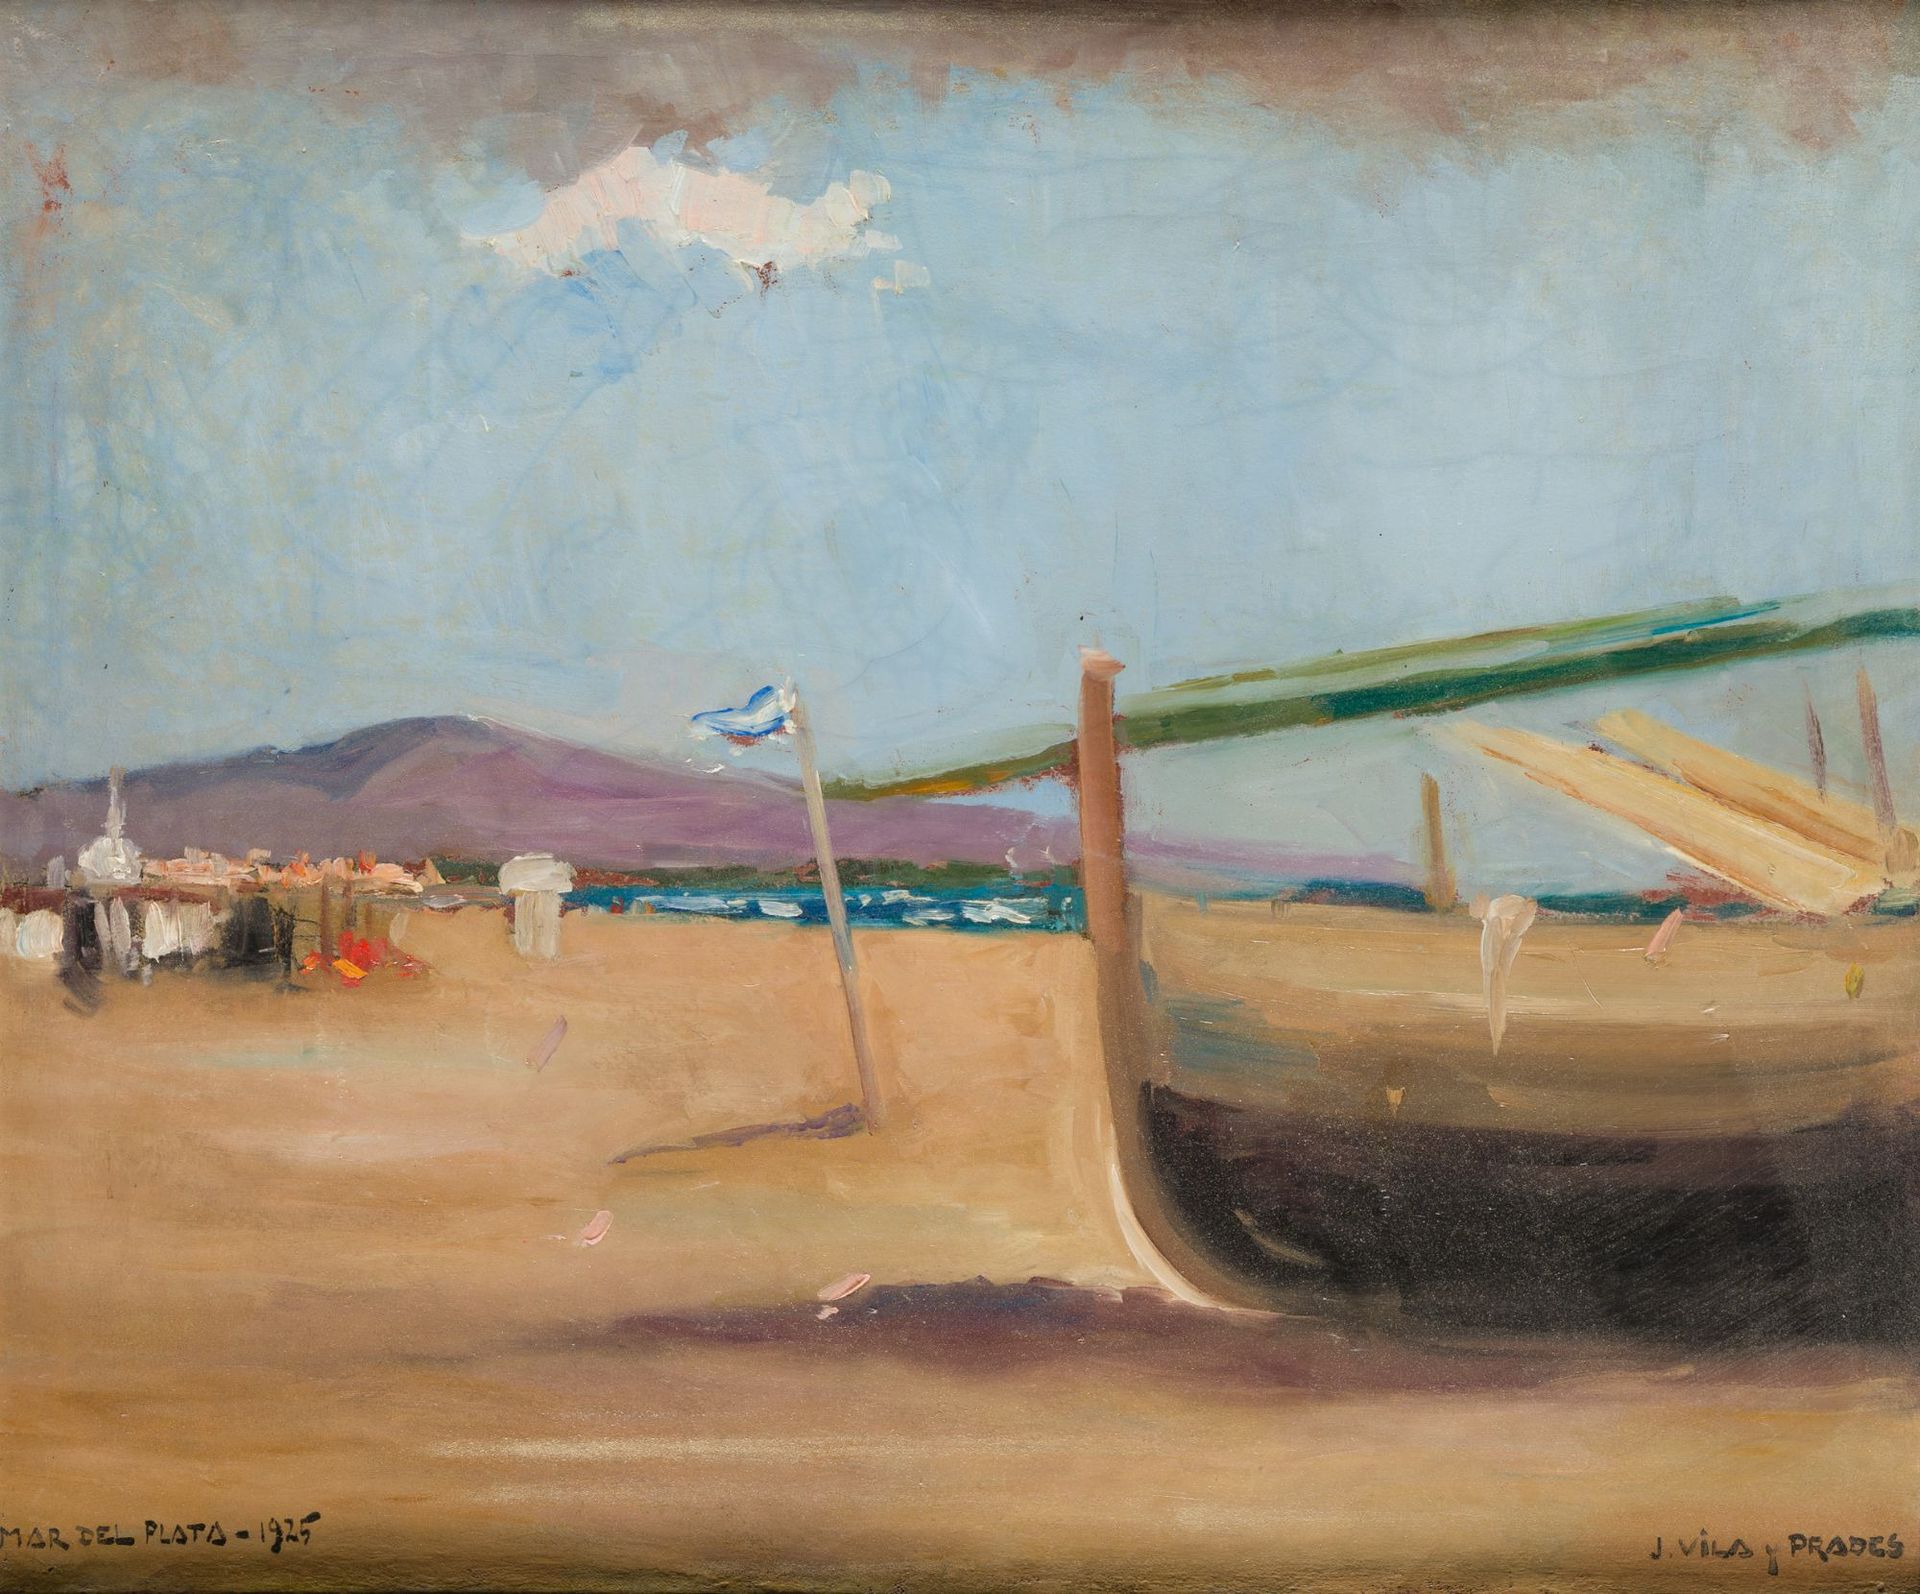 JULIO VILA Y PRADES Valencia (1873) / Barcelona (1930) "Mar del Plata", 1925 Hui&hellip;